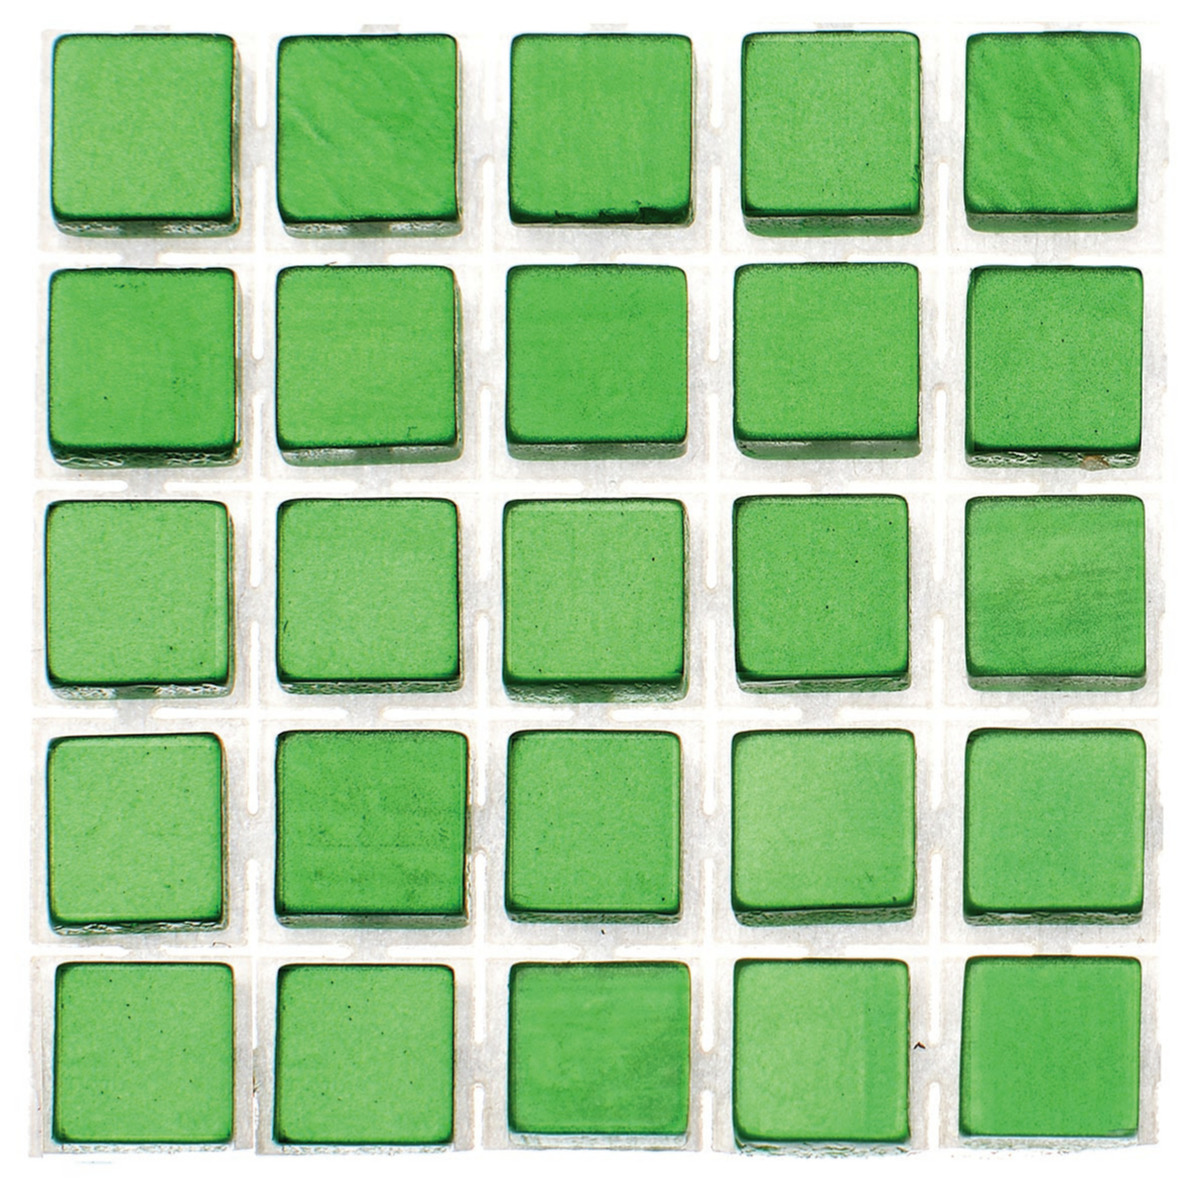 119x stuks mozaieken maken steentjes/tegels kleur groen met formaat 5 x 5 x 2 mm